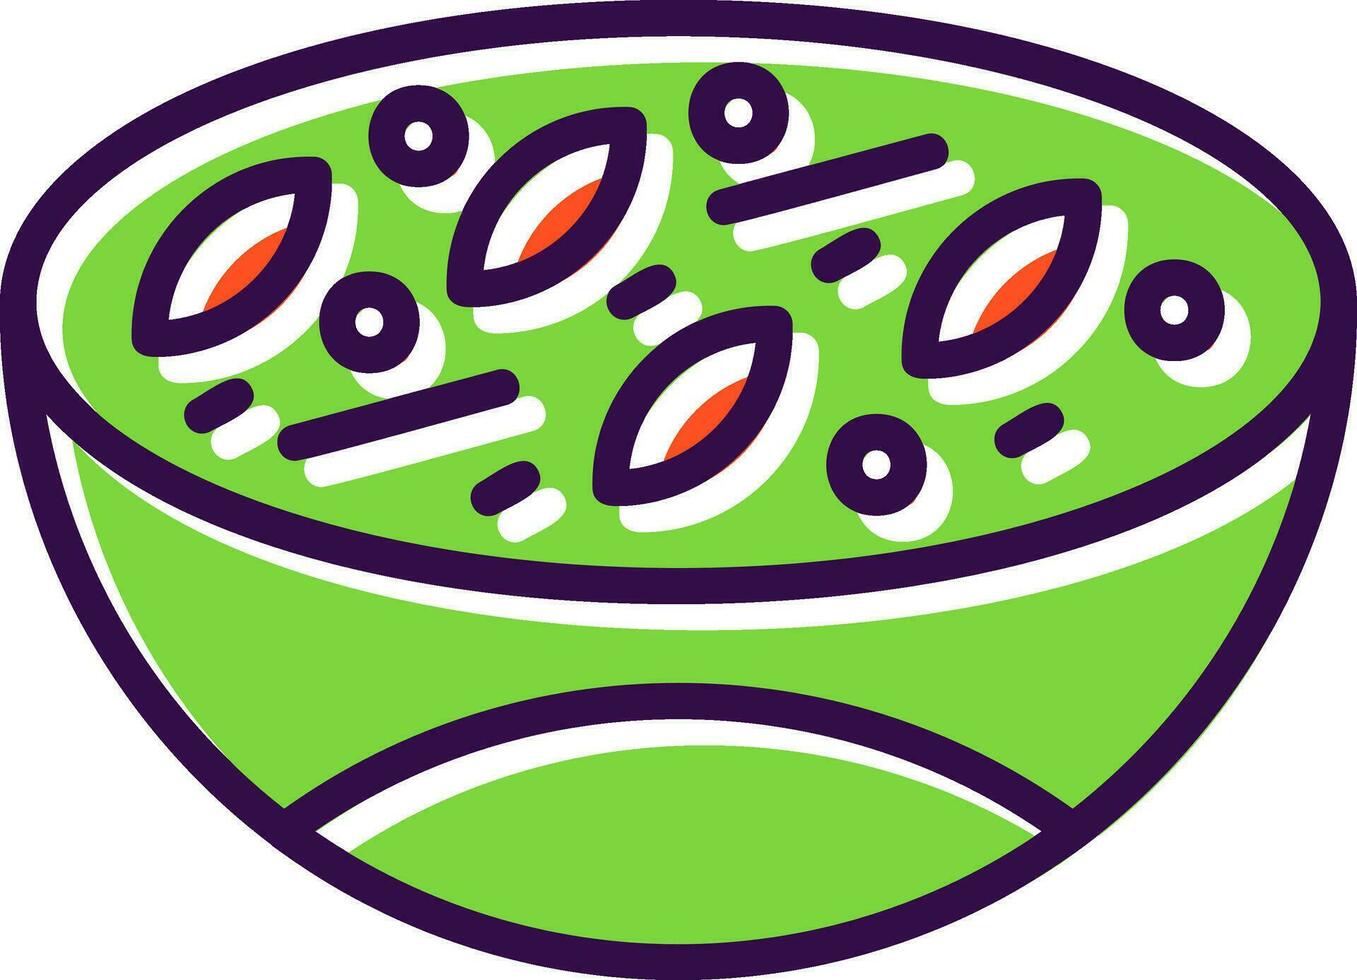 Green curry Vector Icon Design